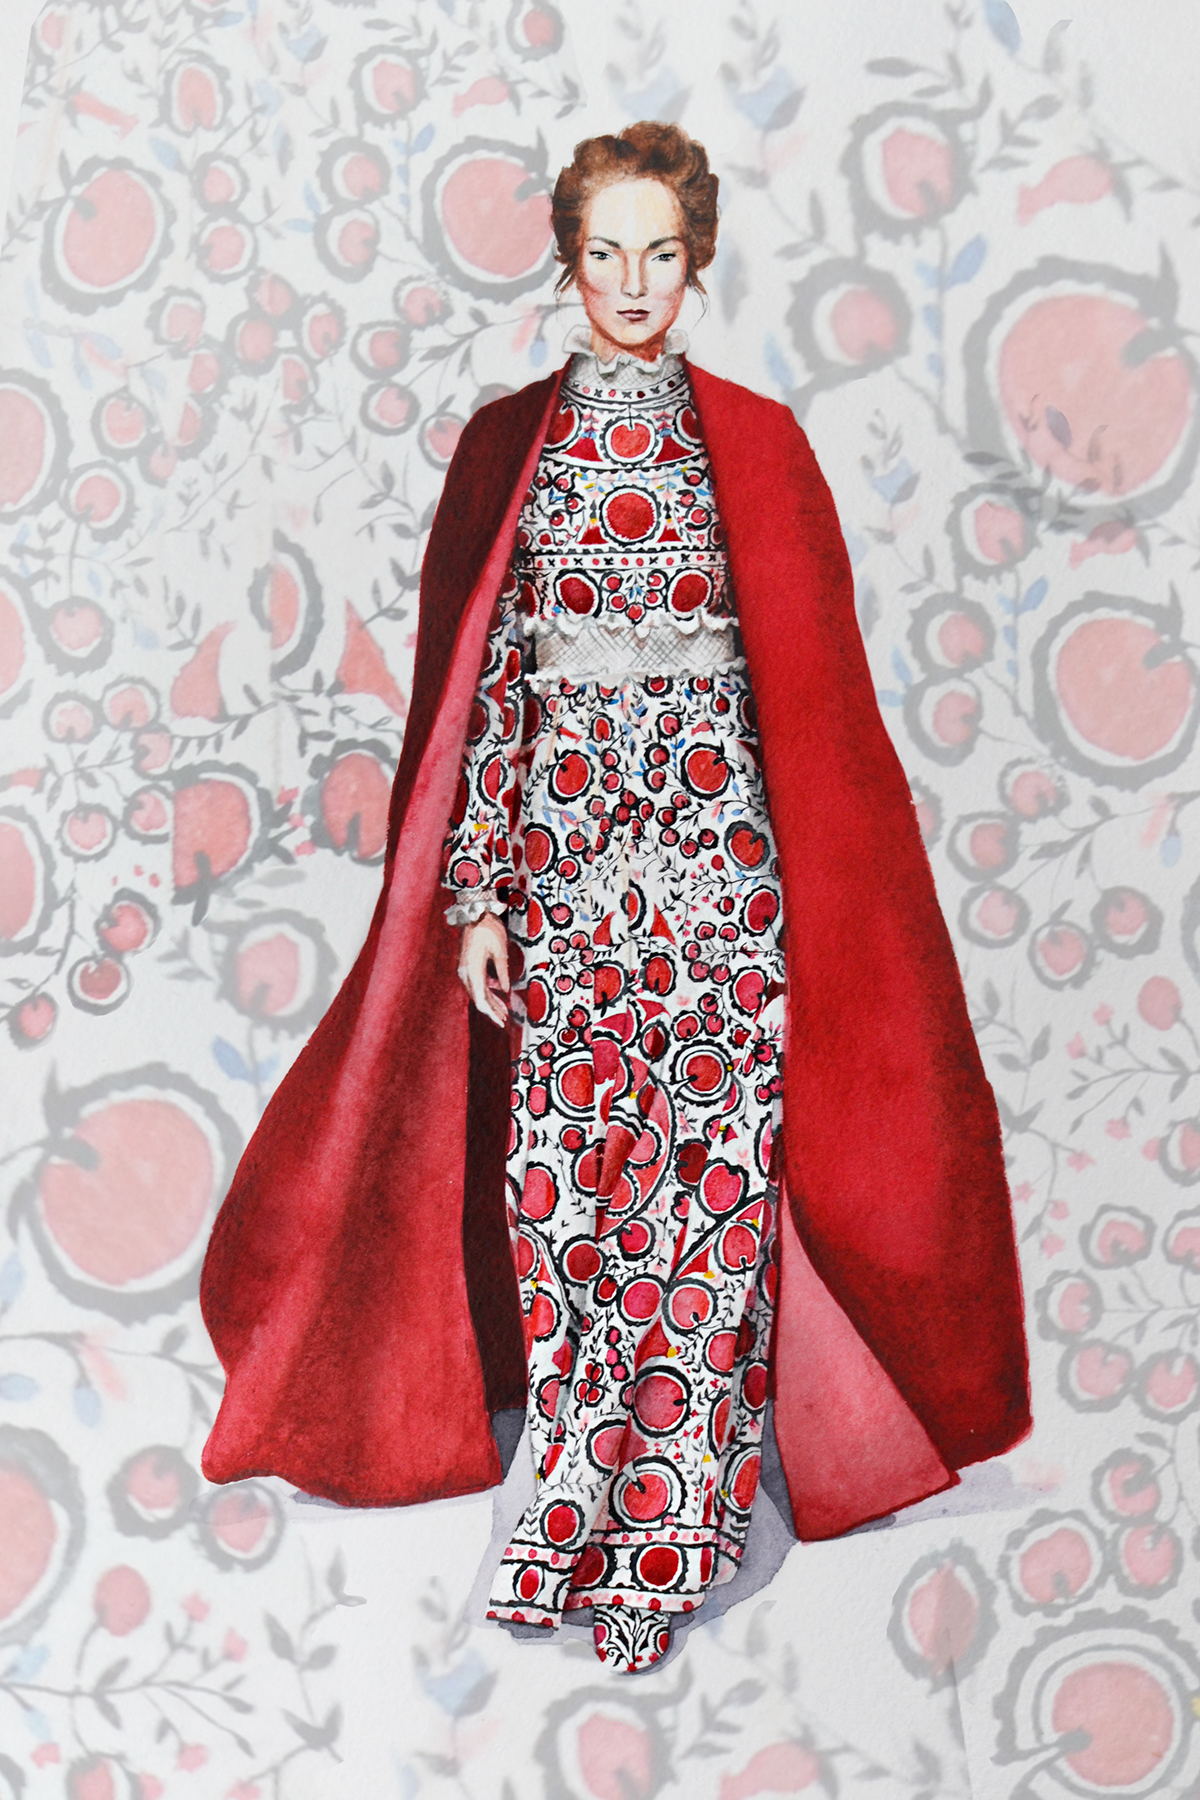 valentino girl red dress ornament cape Paris watercolor